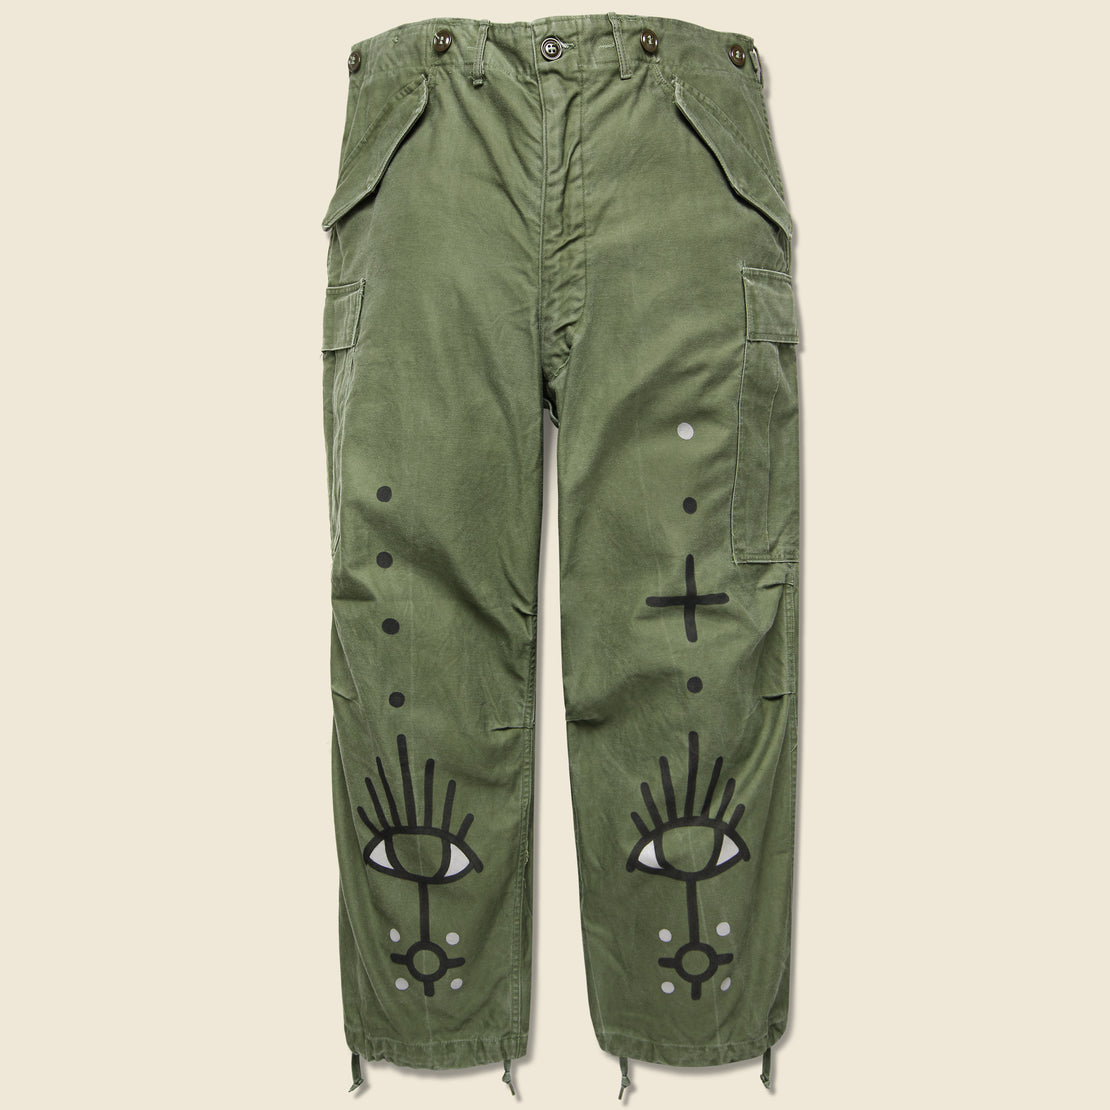 Tom Jean Webb Vintage Military-Issued Field Pants - All Seeing Eye